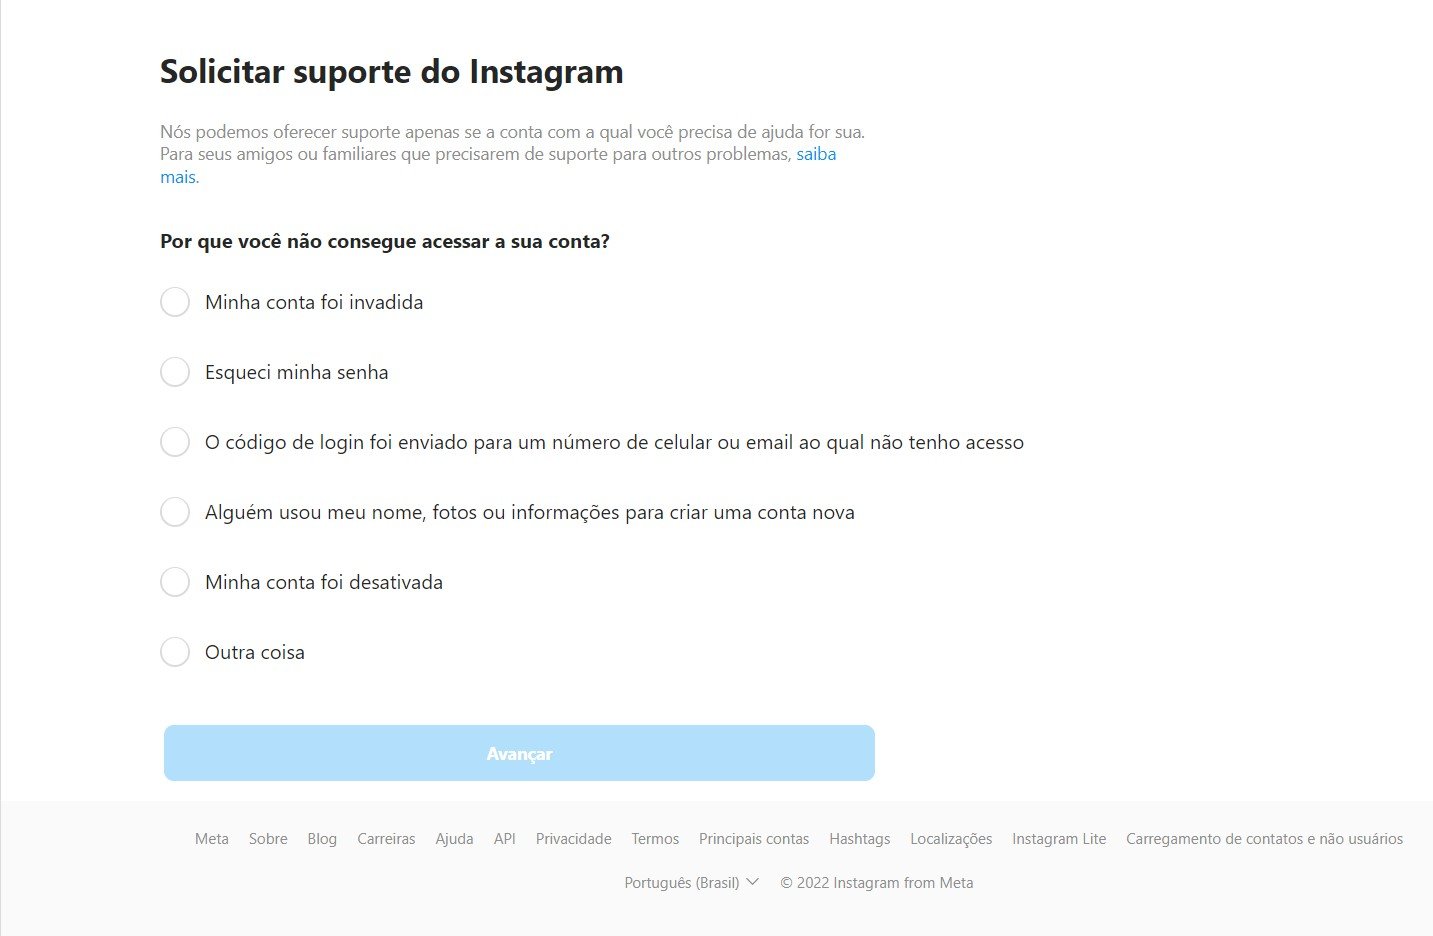 Instagram.com/hacked já tem página de suporte em português.